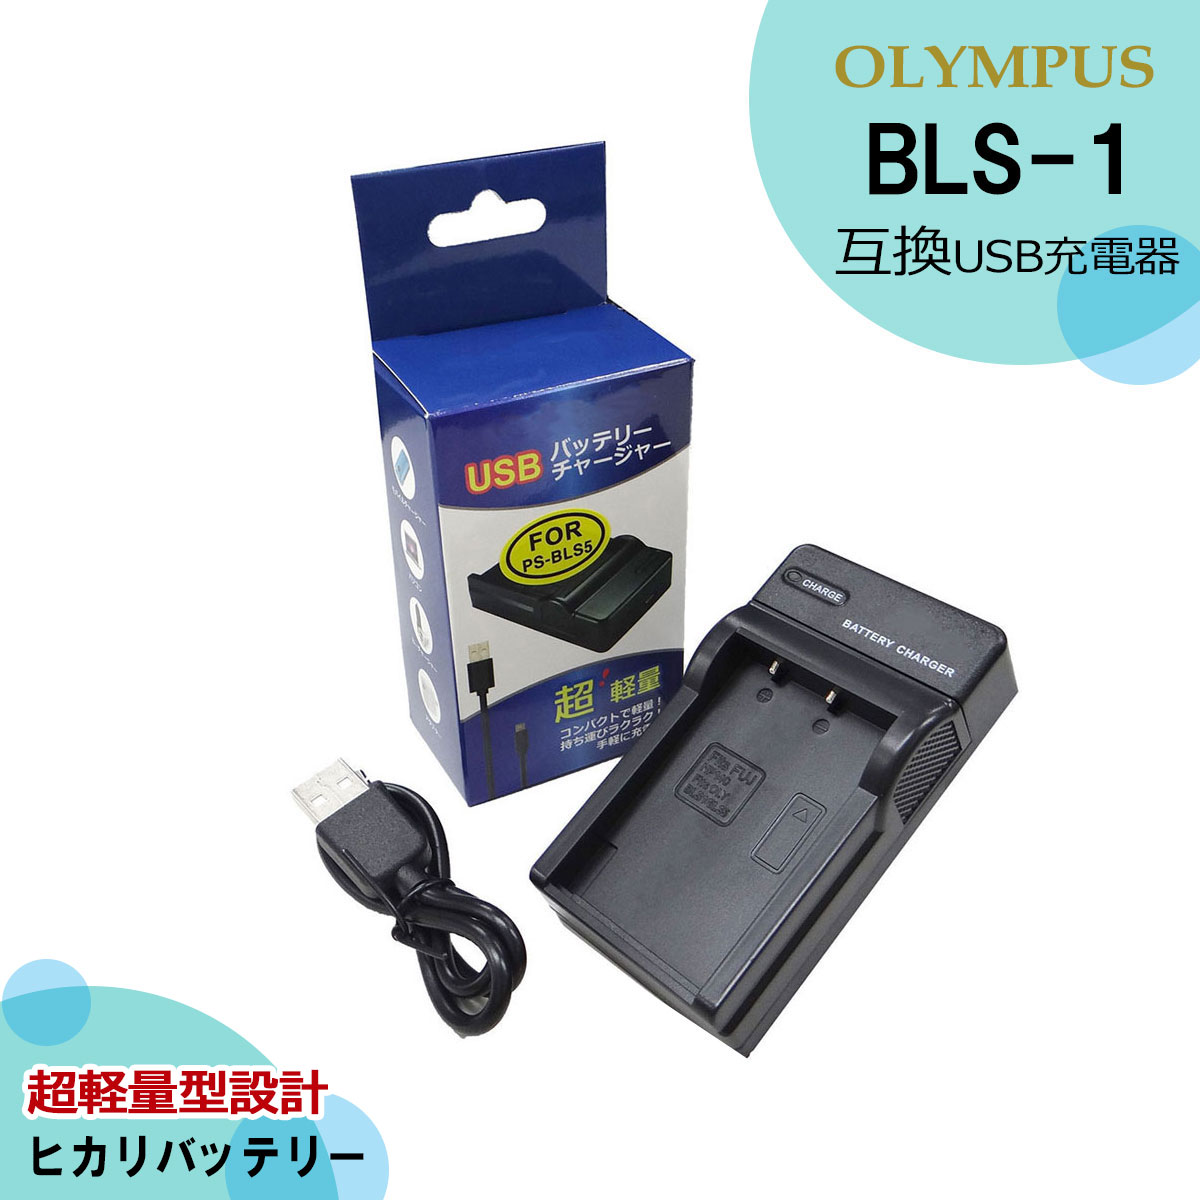 オリンパス ★送料無料★BLS-1 BCS-1 互換充電器 USB型 E-PL3 / E-PL3 / E-PL5 / E-PL6 / E-PL7 / E-PM1 E-PM2 / OM-D / PL6 / Stylus 1 E-P1 / E-P2 / E-P3 / E-PL1 / E-PL1s / E-PL2 E-400 / E-410 / E-420 / E-450 / E-620 / E-M10